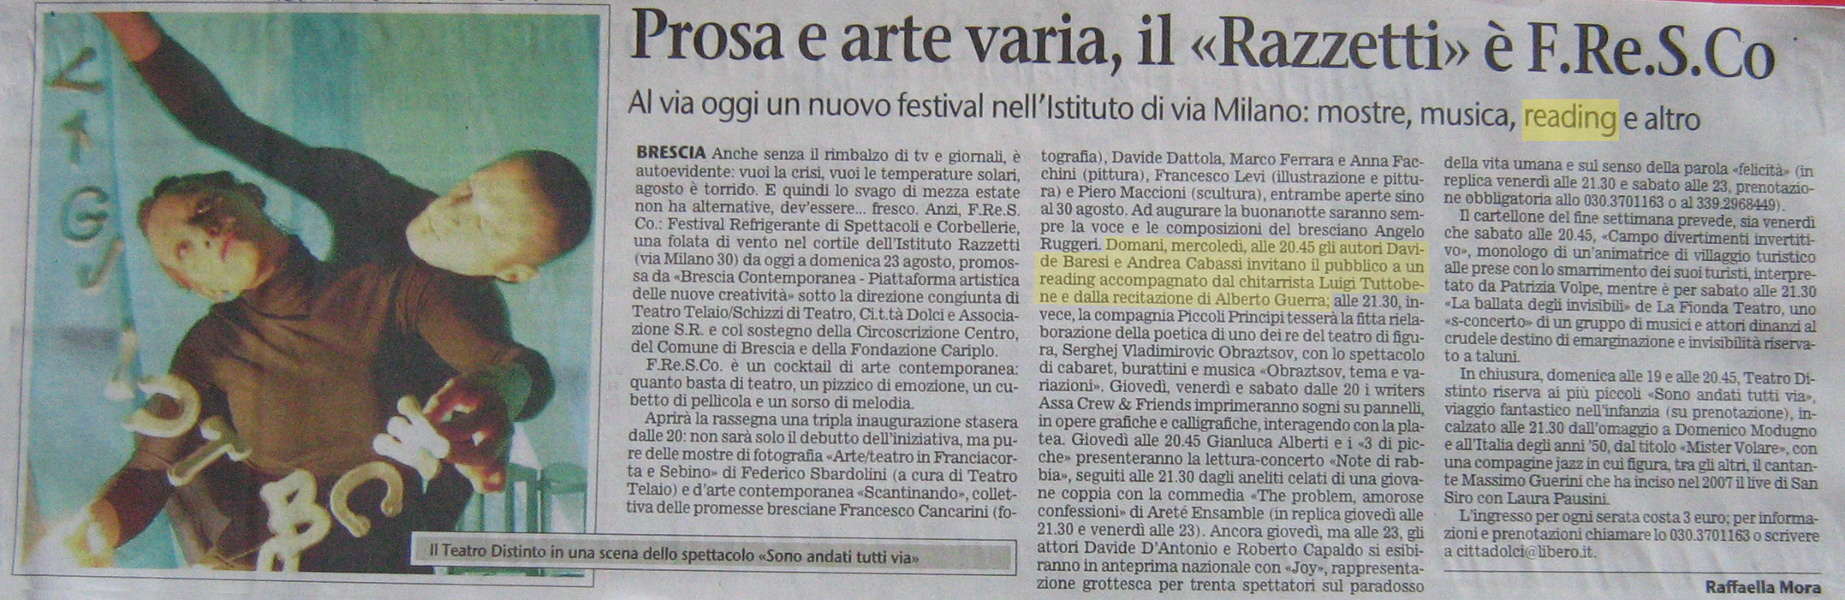 Giornale di Brescia 18 agosto 2009